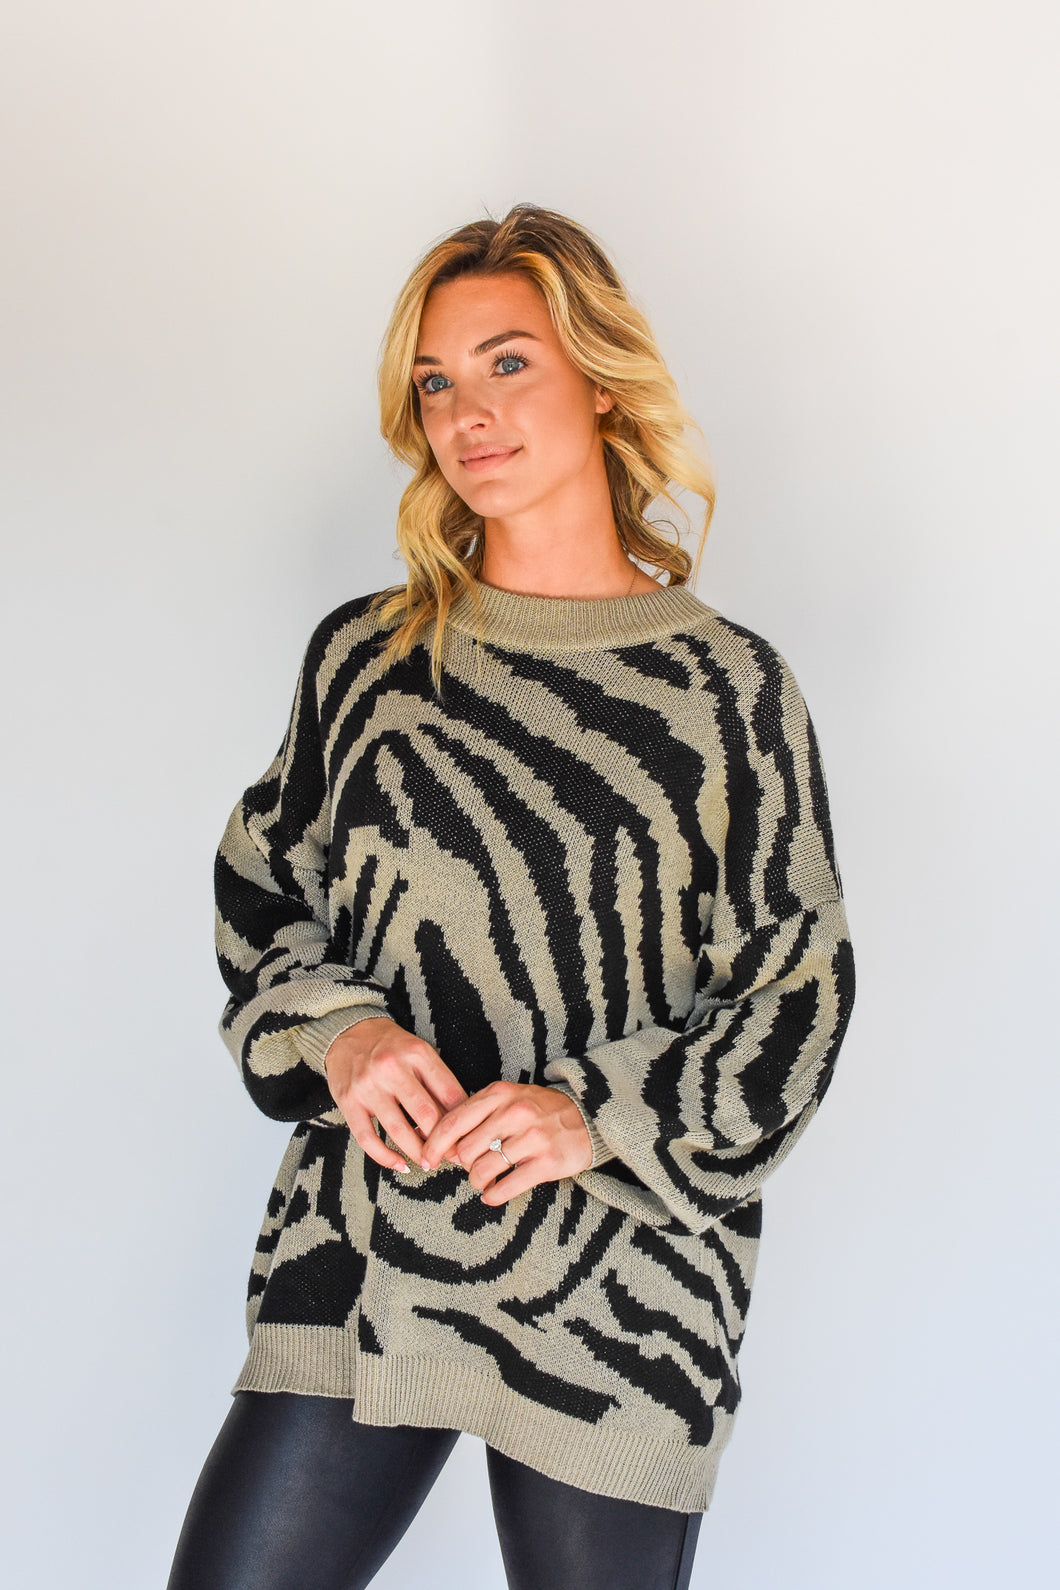 Knock My Stripes Off Zebra Print Sweater